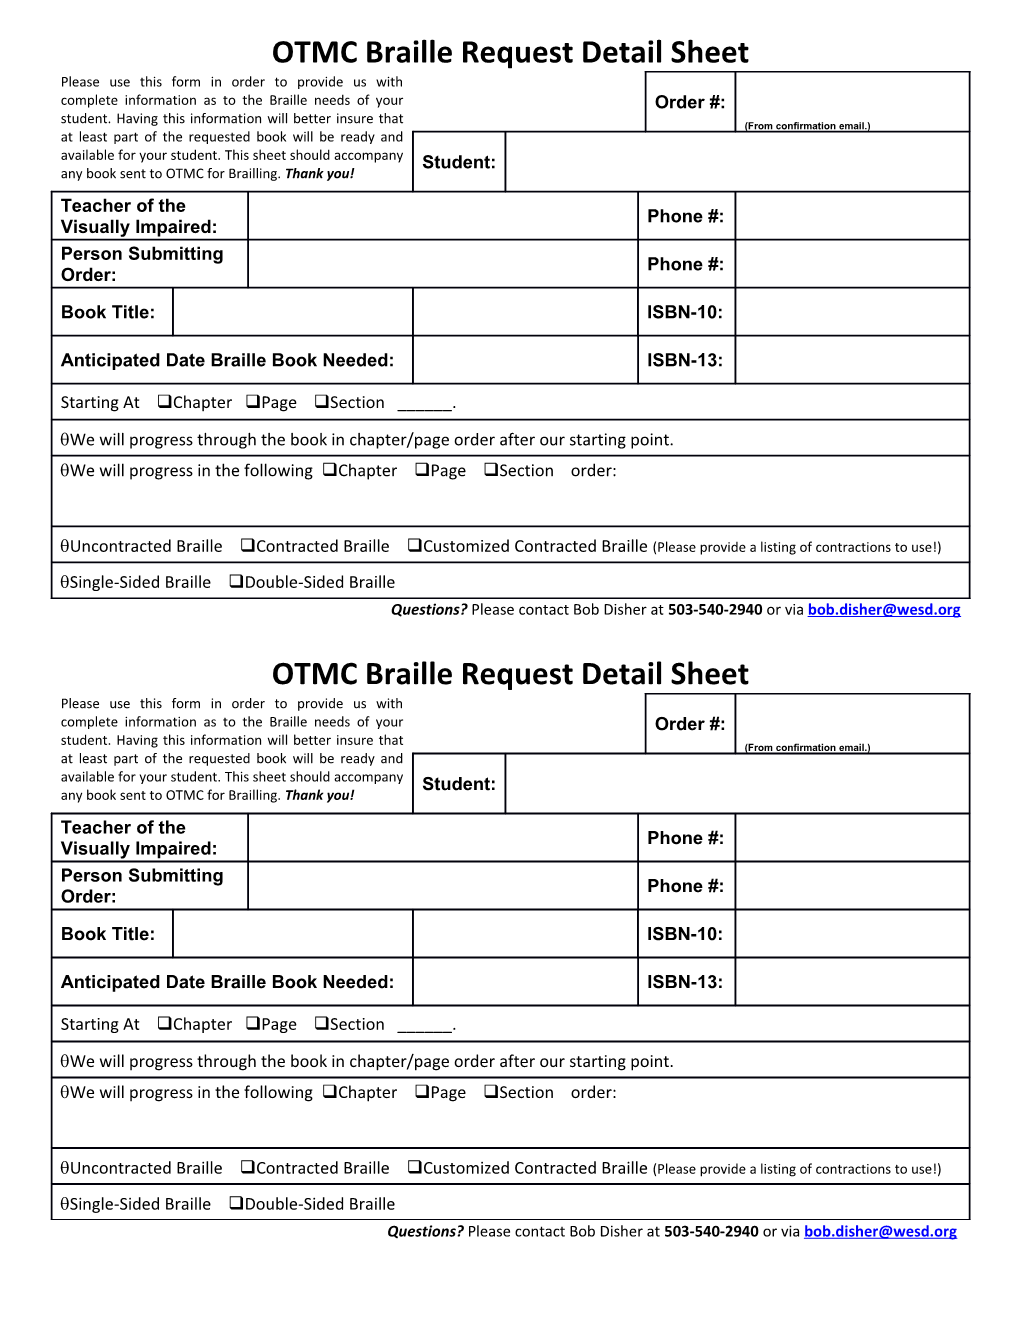 OTMC Braille Request Detail Sheet